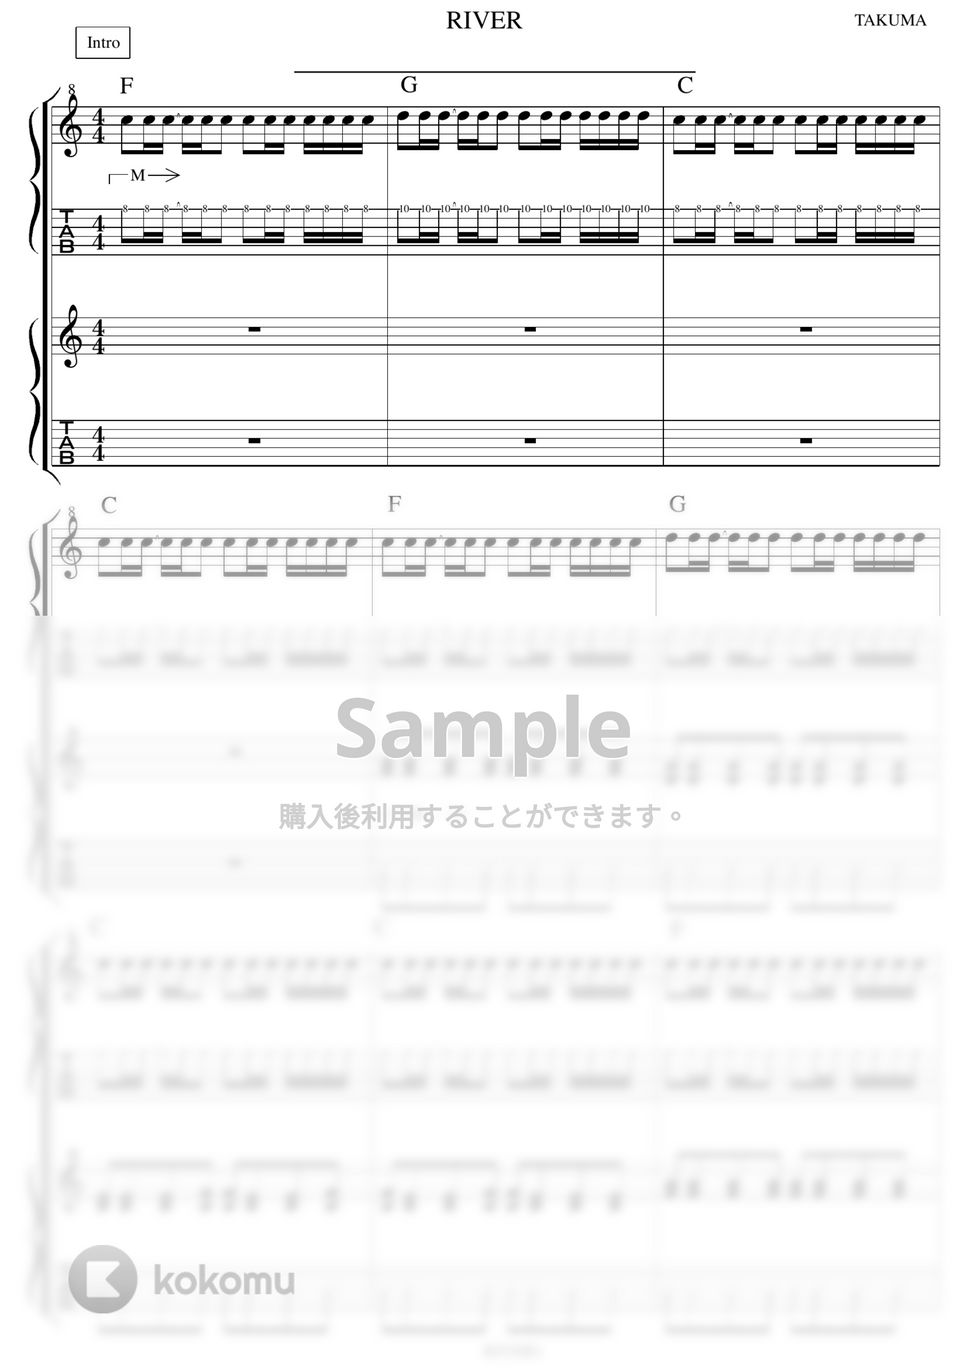 10-FEET - 10-FEET人気曲3セット ギター演奏動画付TAB譜 by バイトーン音楽教室